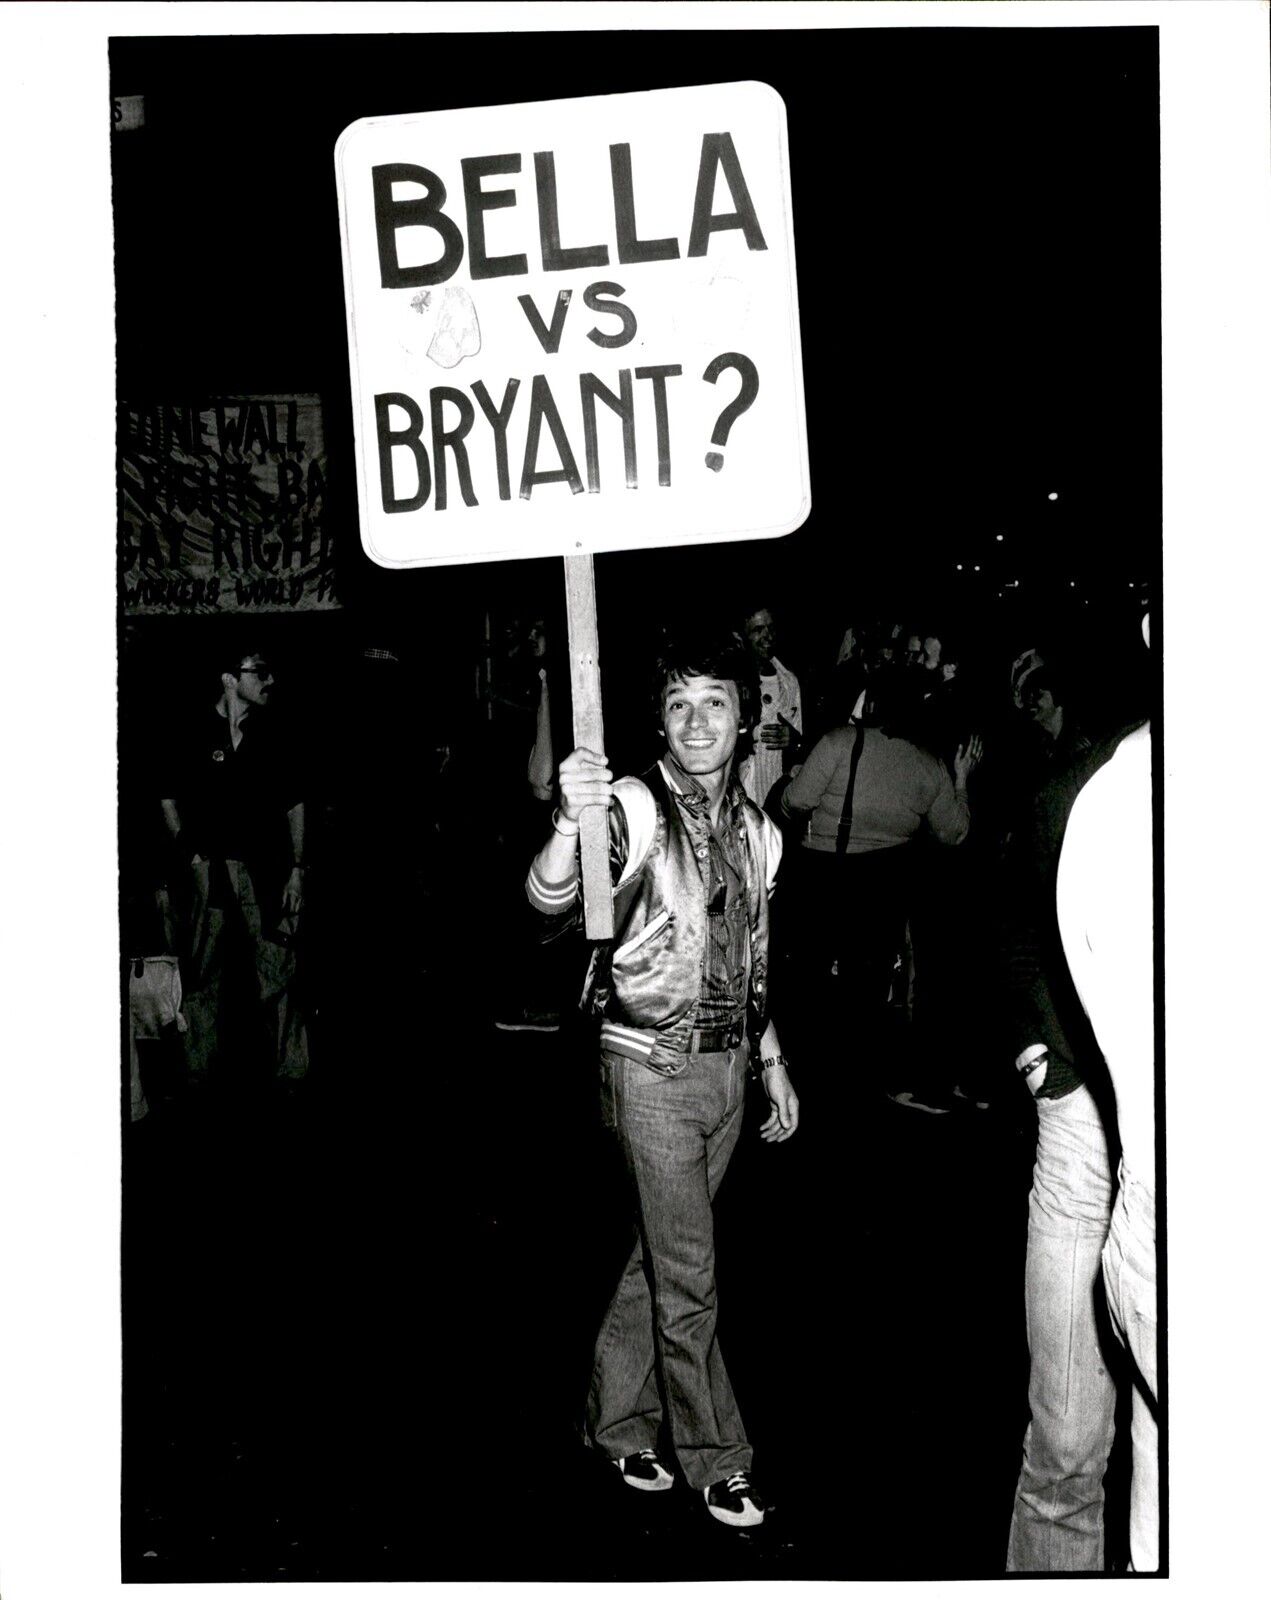 LD306 Original Jim Anderson Photo BELLA VS BRYANT PICKET SIGN @ GAY RIGHTS RALLY